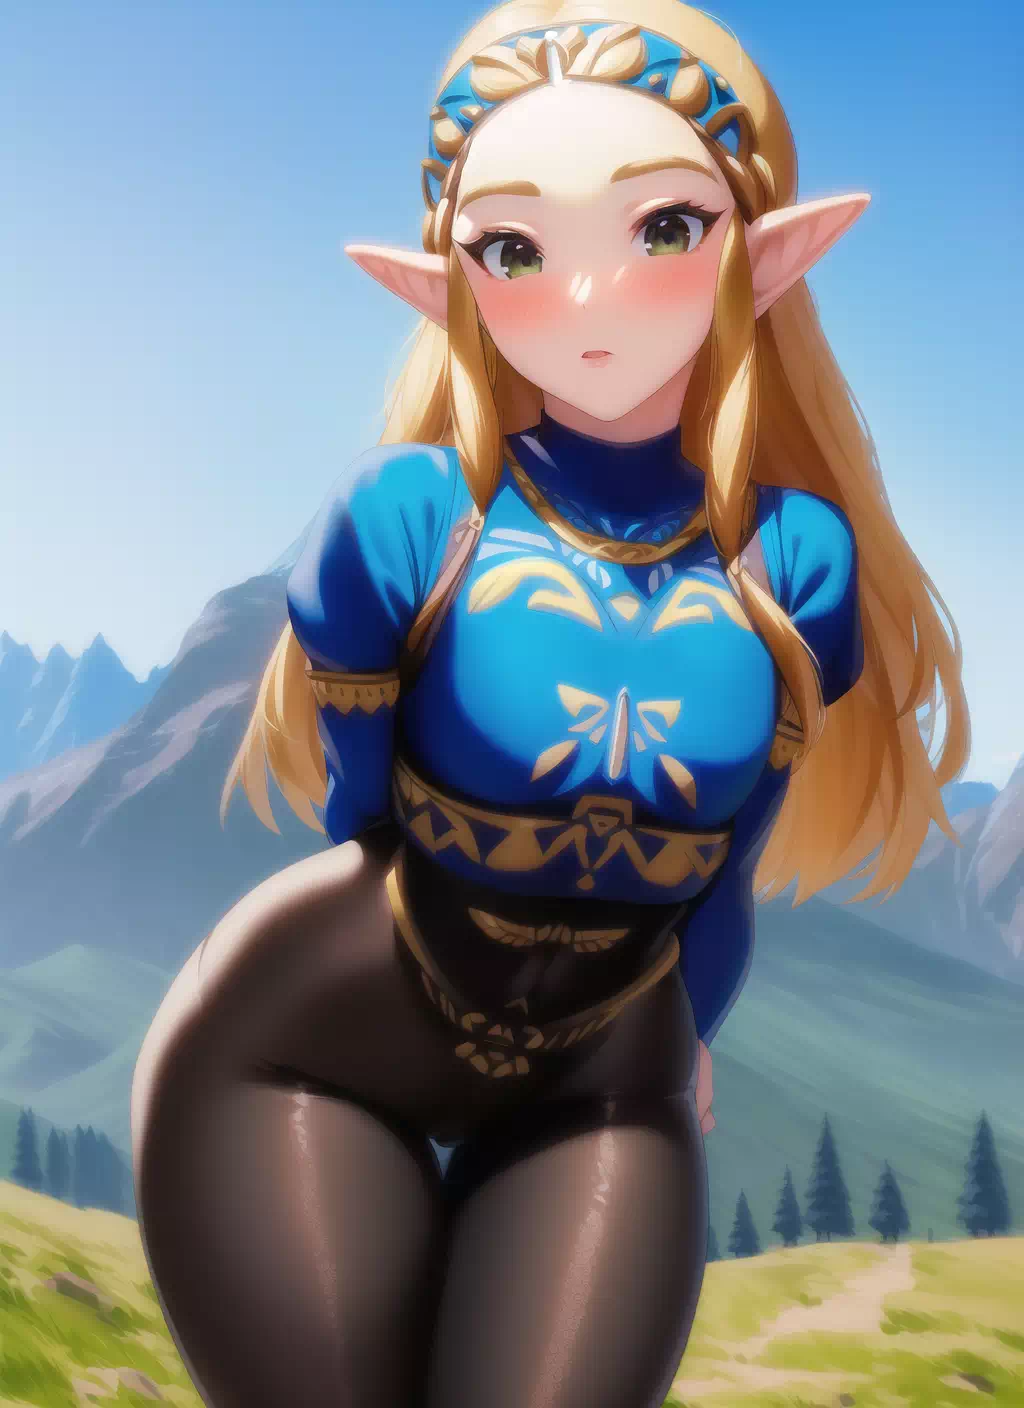 More Zelda